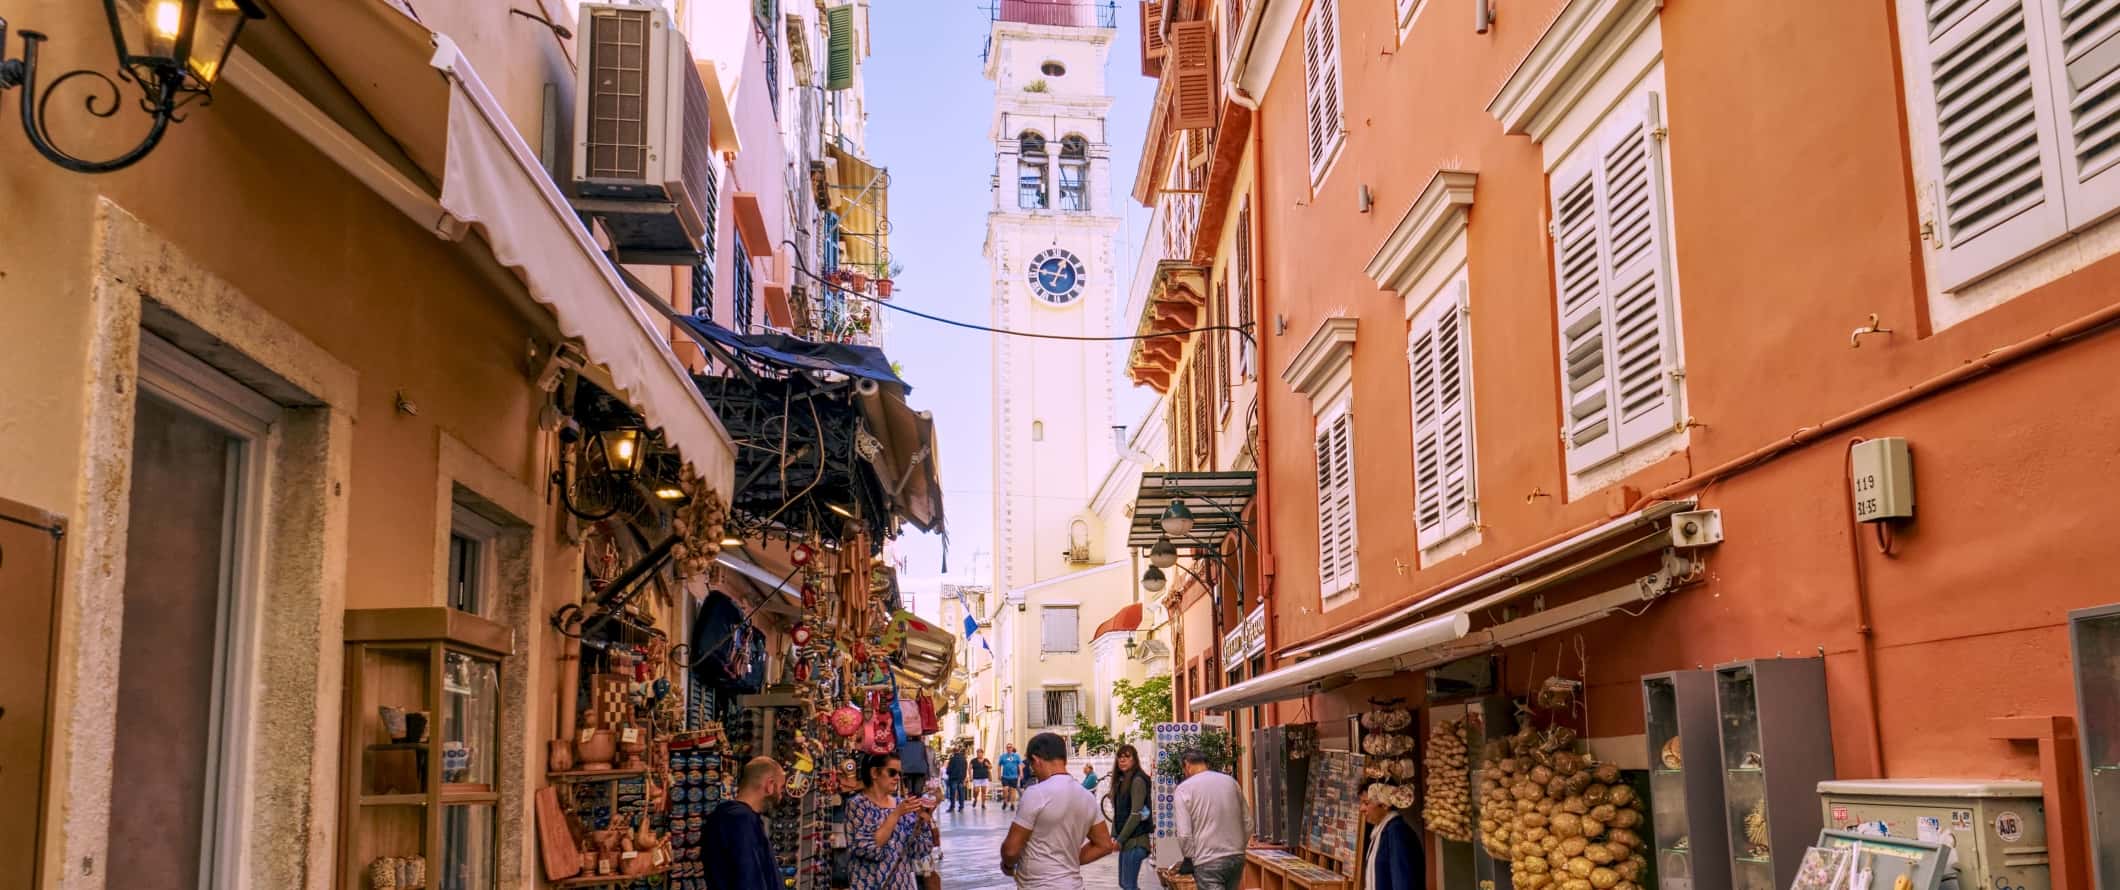 Vista da torre sineira no final de animadas ruas estreitas da cidade de Corfu, Grécia.< fan> Ferry Hopper - Se você deseja reservar ingressos a vapor, este site ajudará você a encontrar várias empresas, a fazer uma rota e reservar ingressos.